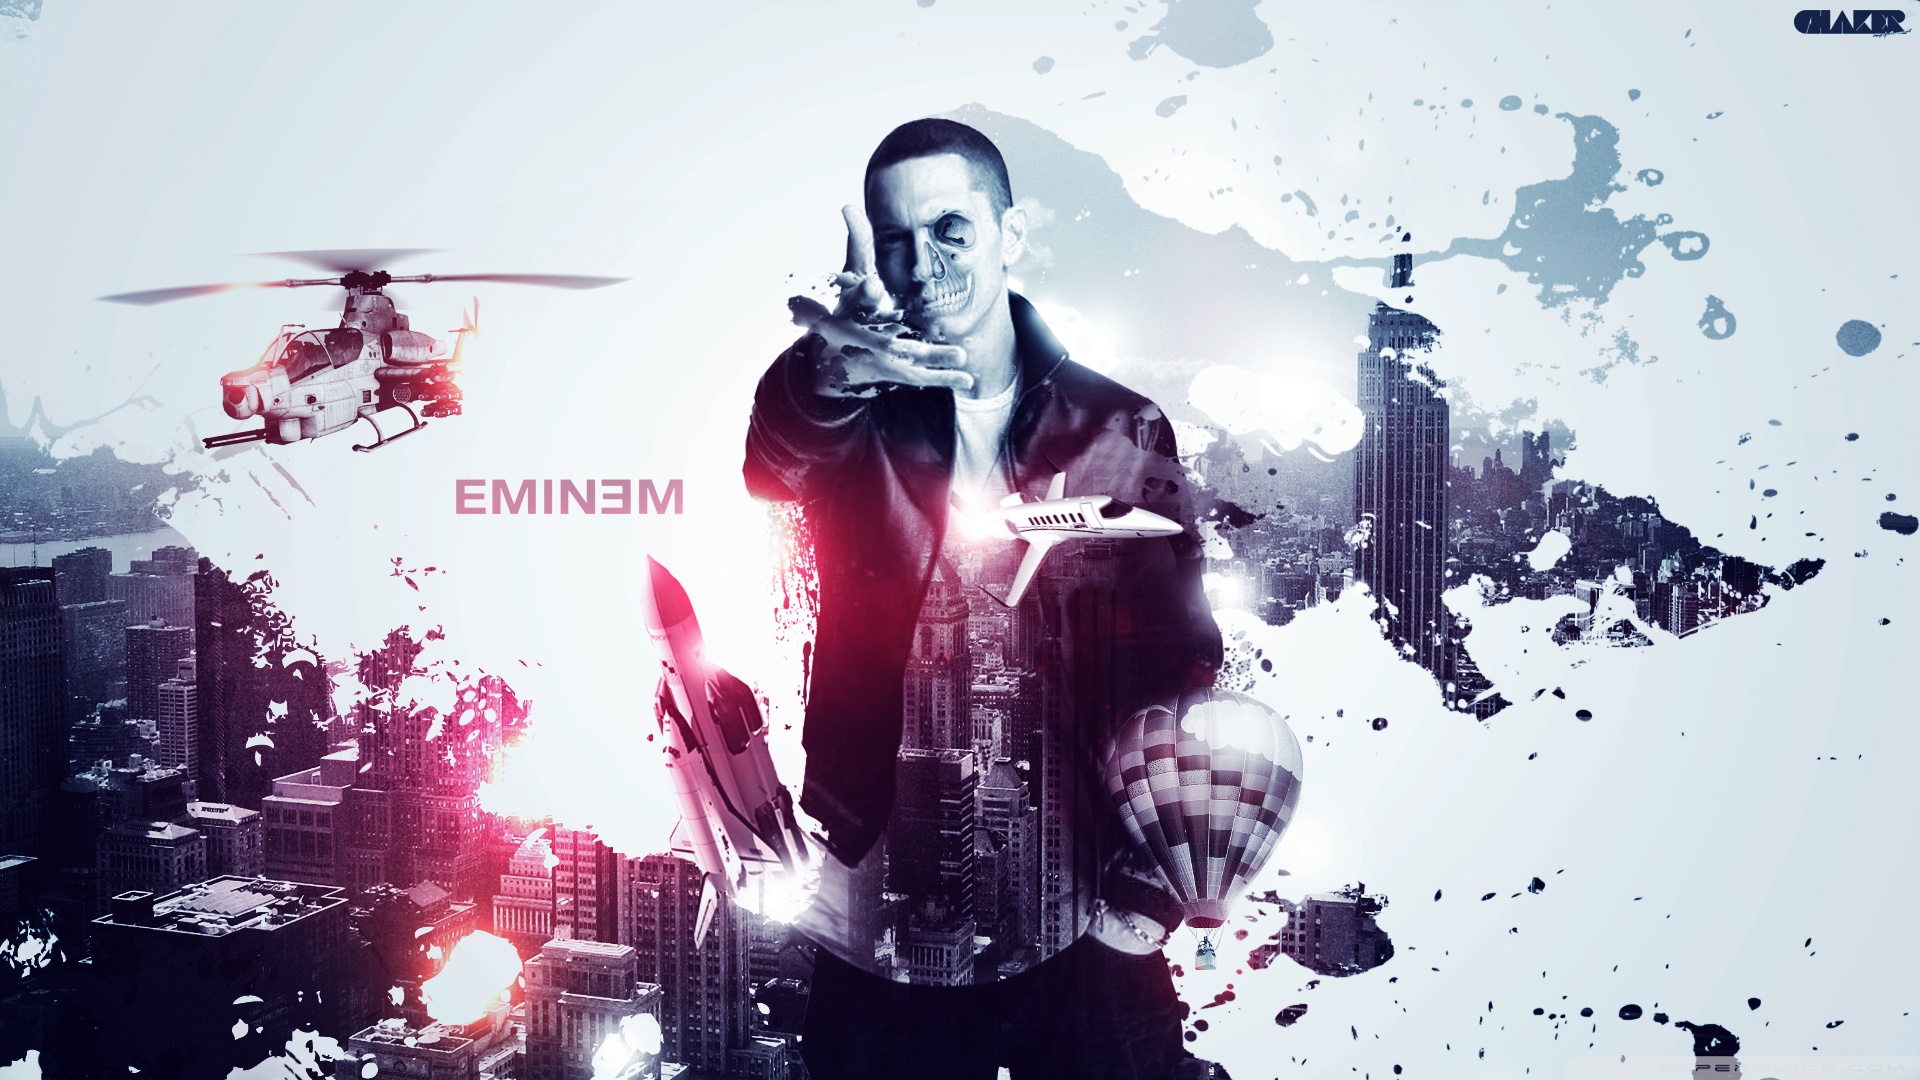 Eminem hd ultra hd desktop background wallpaper for k uhd tv tablet smartphone